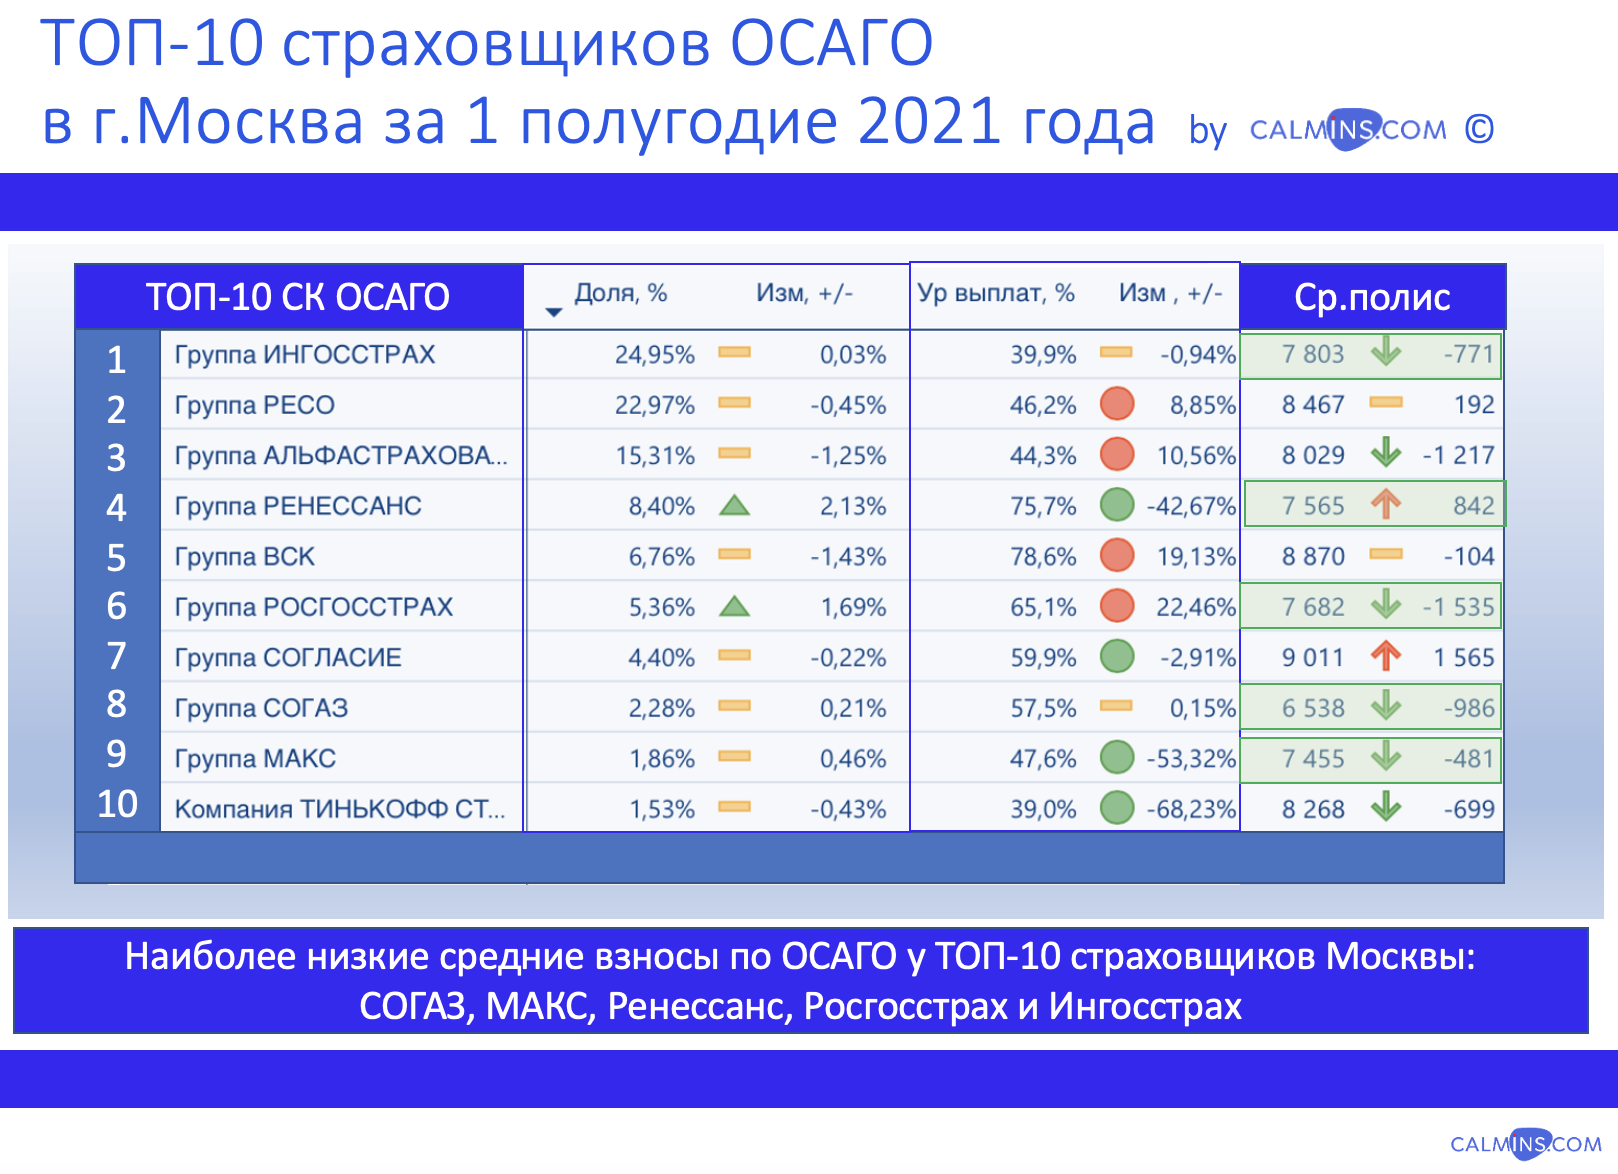 Москва: у кого дешевле средний полис ОСАГО в 1 полугодии 2021 года